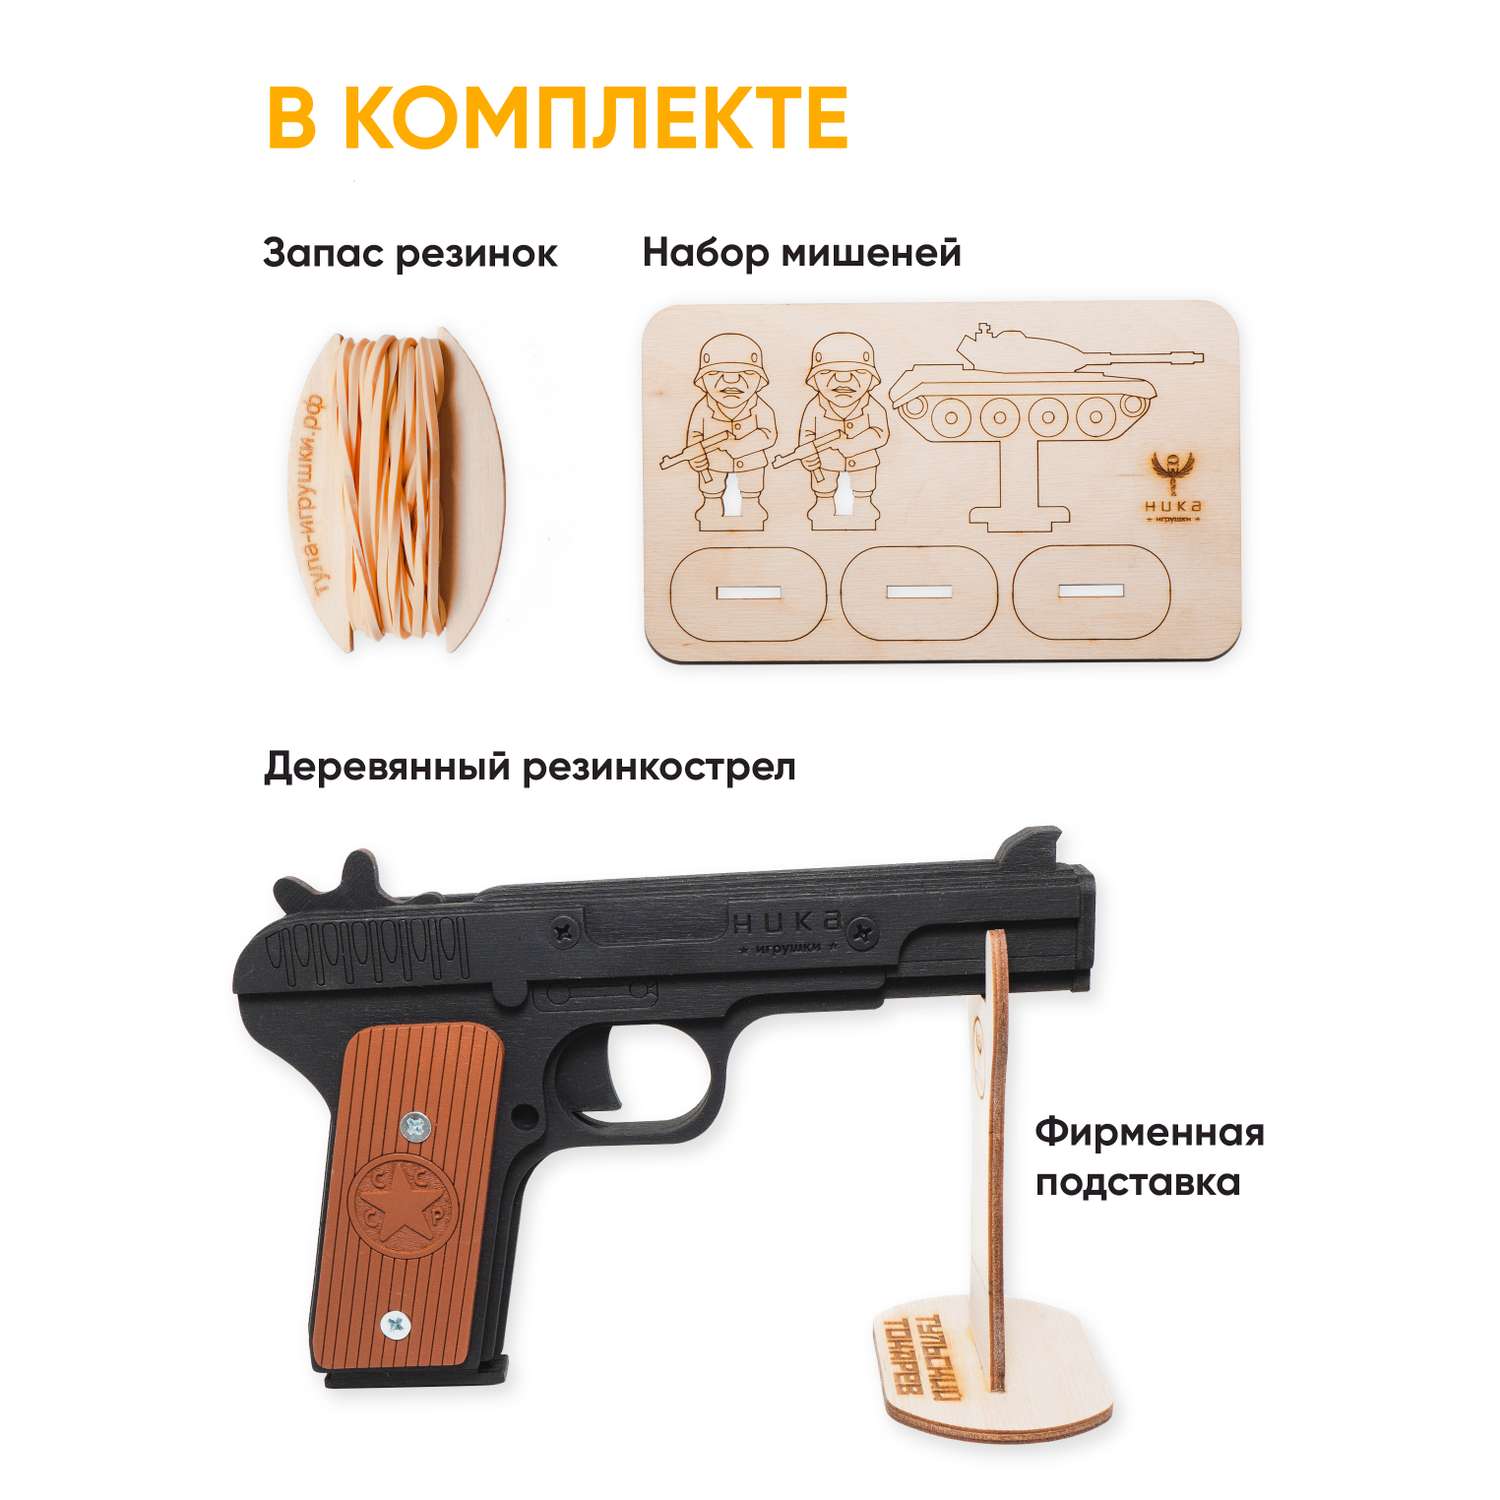 Резинкострел НИКА игрушки Пистолет ТТ в подарочной упаковке - фото 2